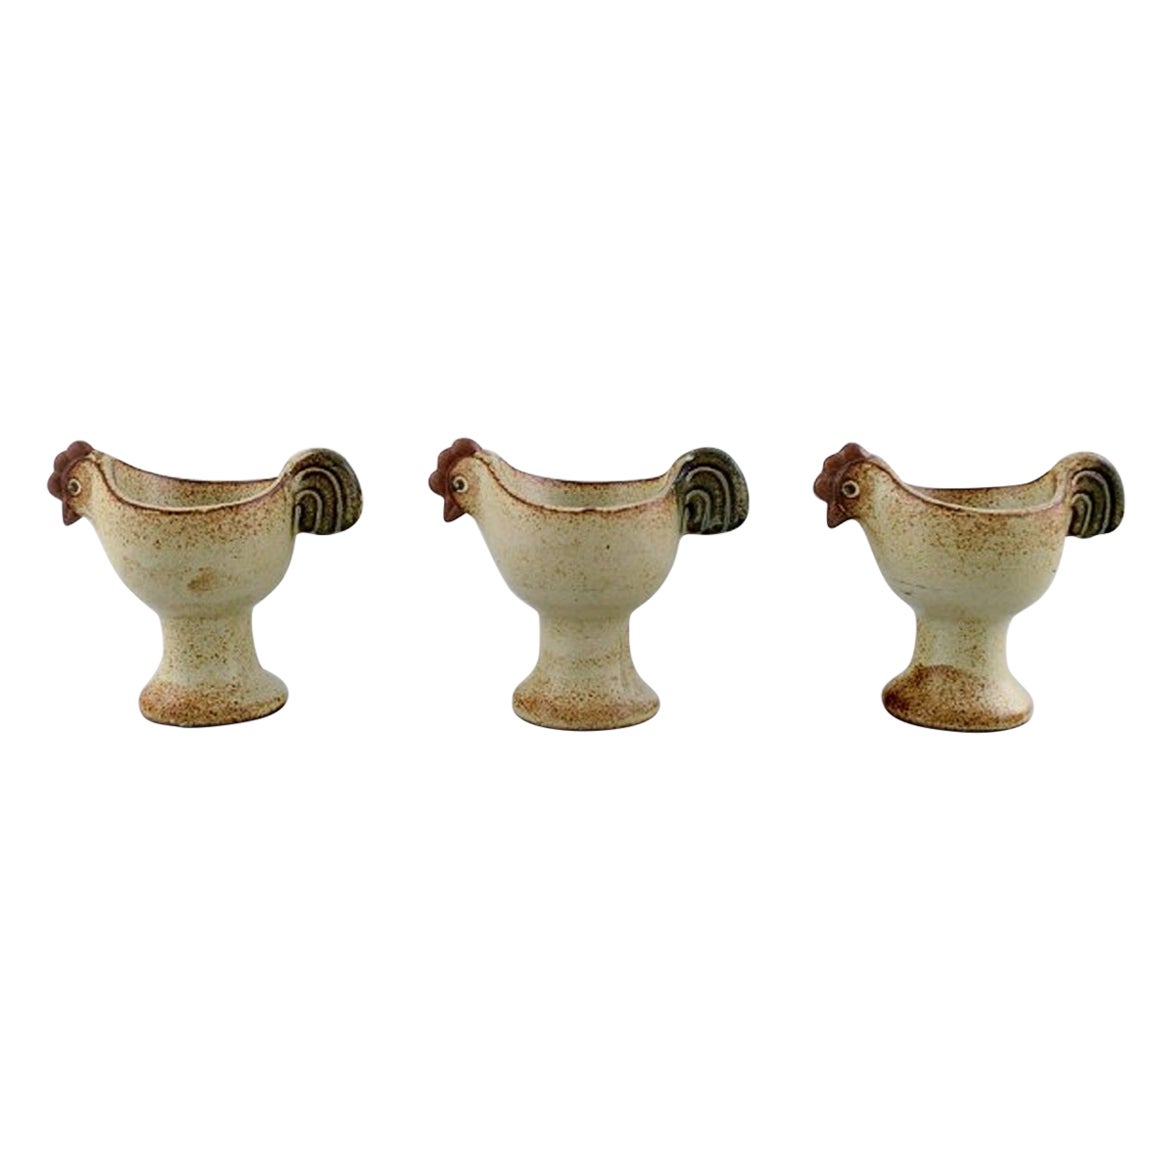 Lisa Larson for Gustavsberg, Three Glazed Ceramic Egg Cups, "Easter" Series